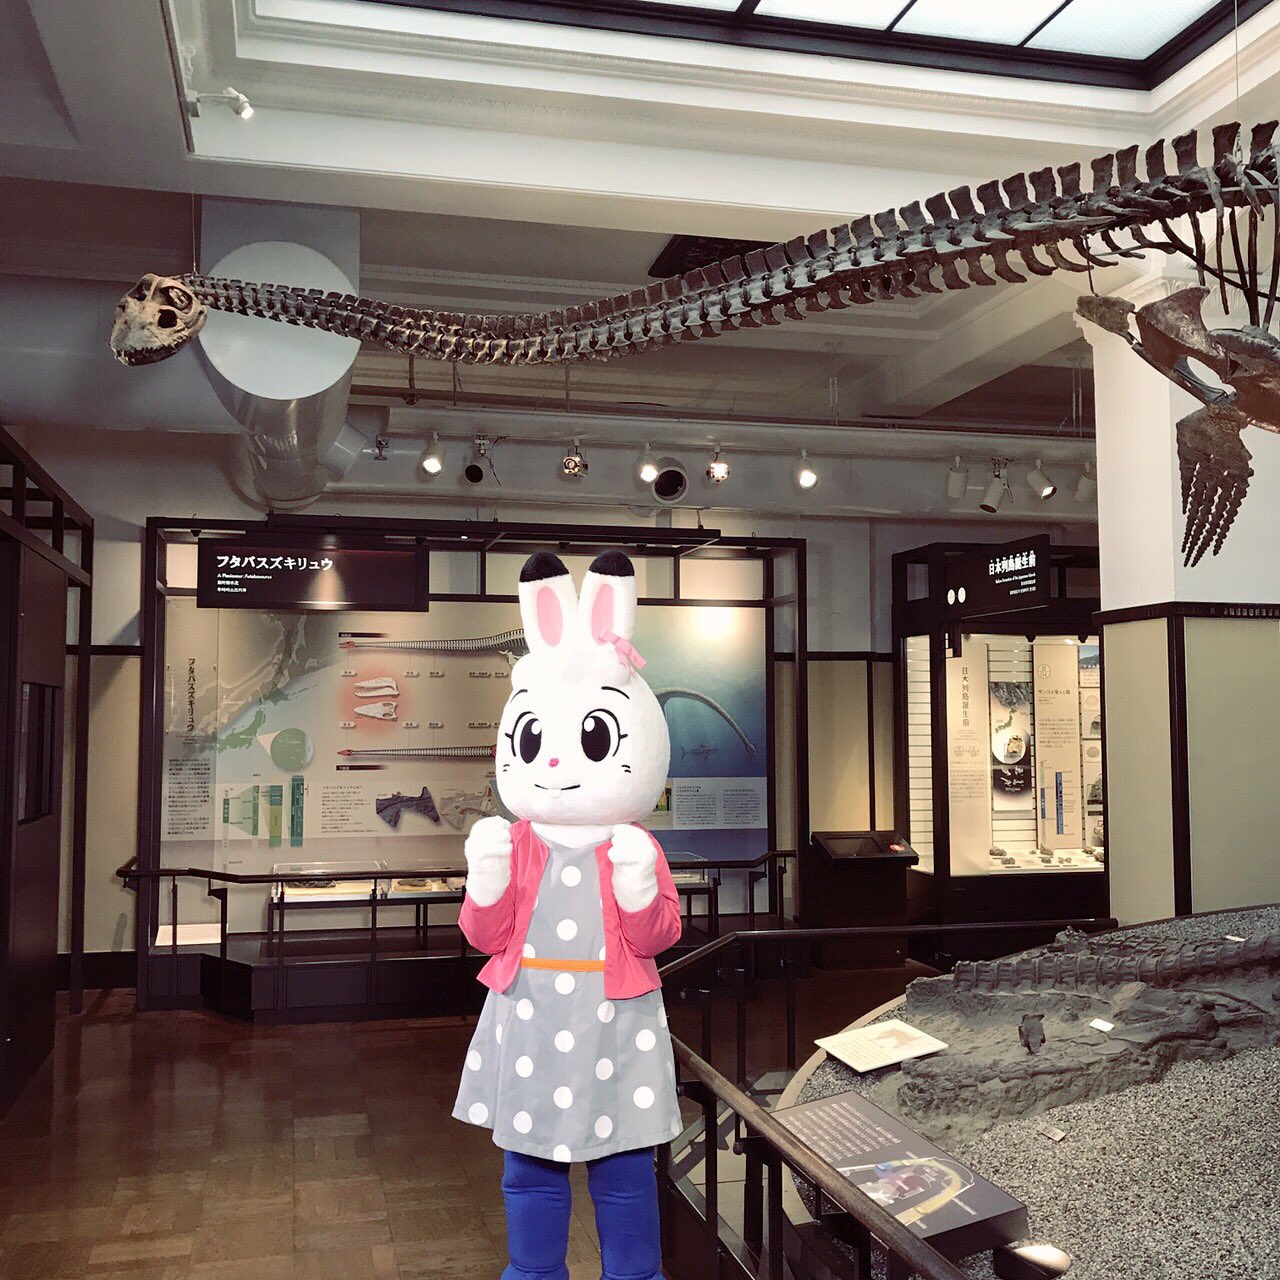 しまじろうのわお 番組スタッフ 今日は国立科学博物館をお借りして新しい歌コーナーの撮影です 恐竜の化石や色々な動物の剥製にスタッフもわお の連続でした しまじろう しまじろうのわお Shimajiro みみりん 国立科学博物館